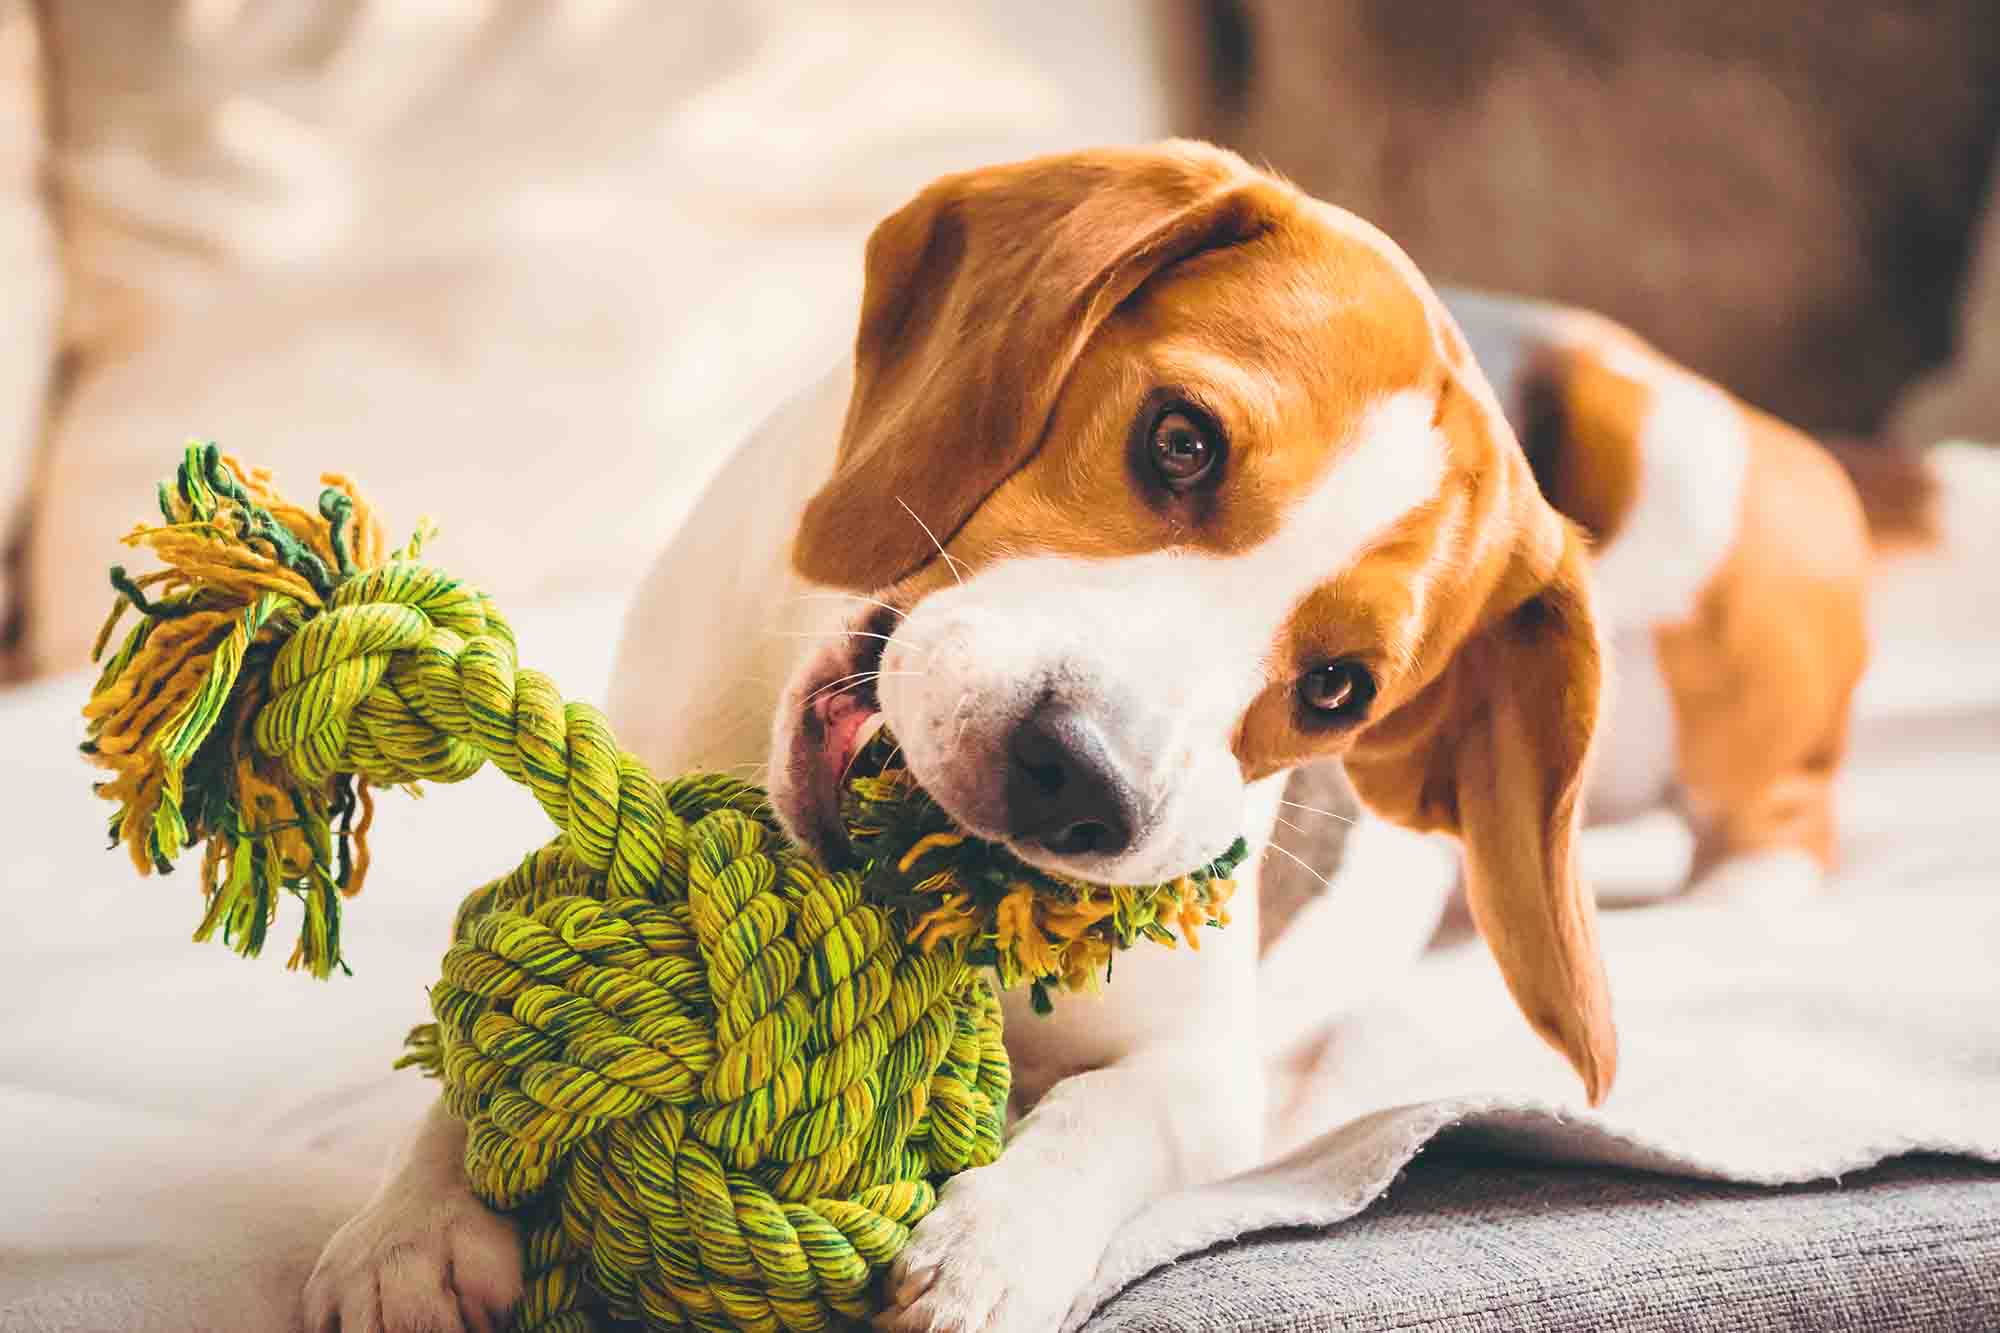 Cómo limpiar los juguetes para perro: consejos prácticos - Pinna the corgi